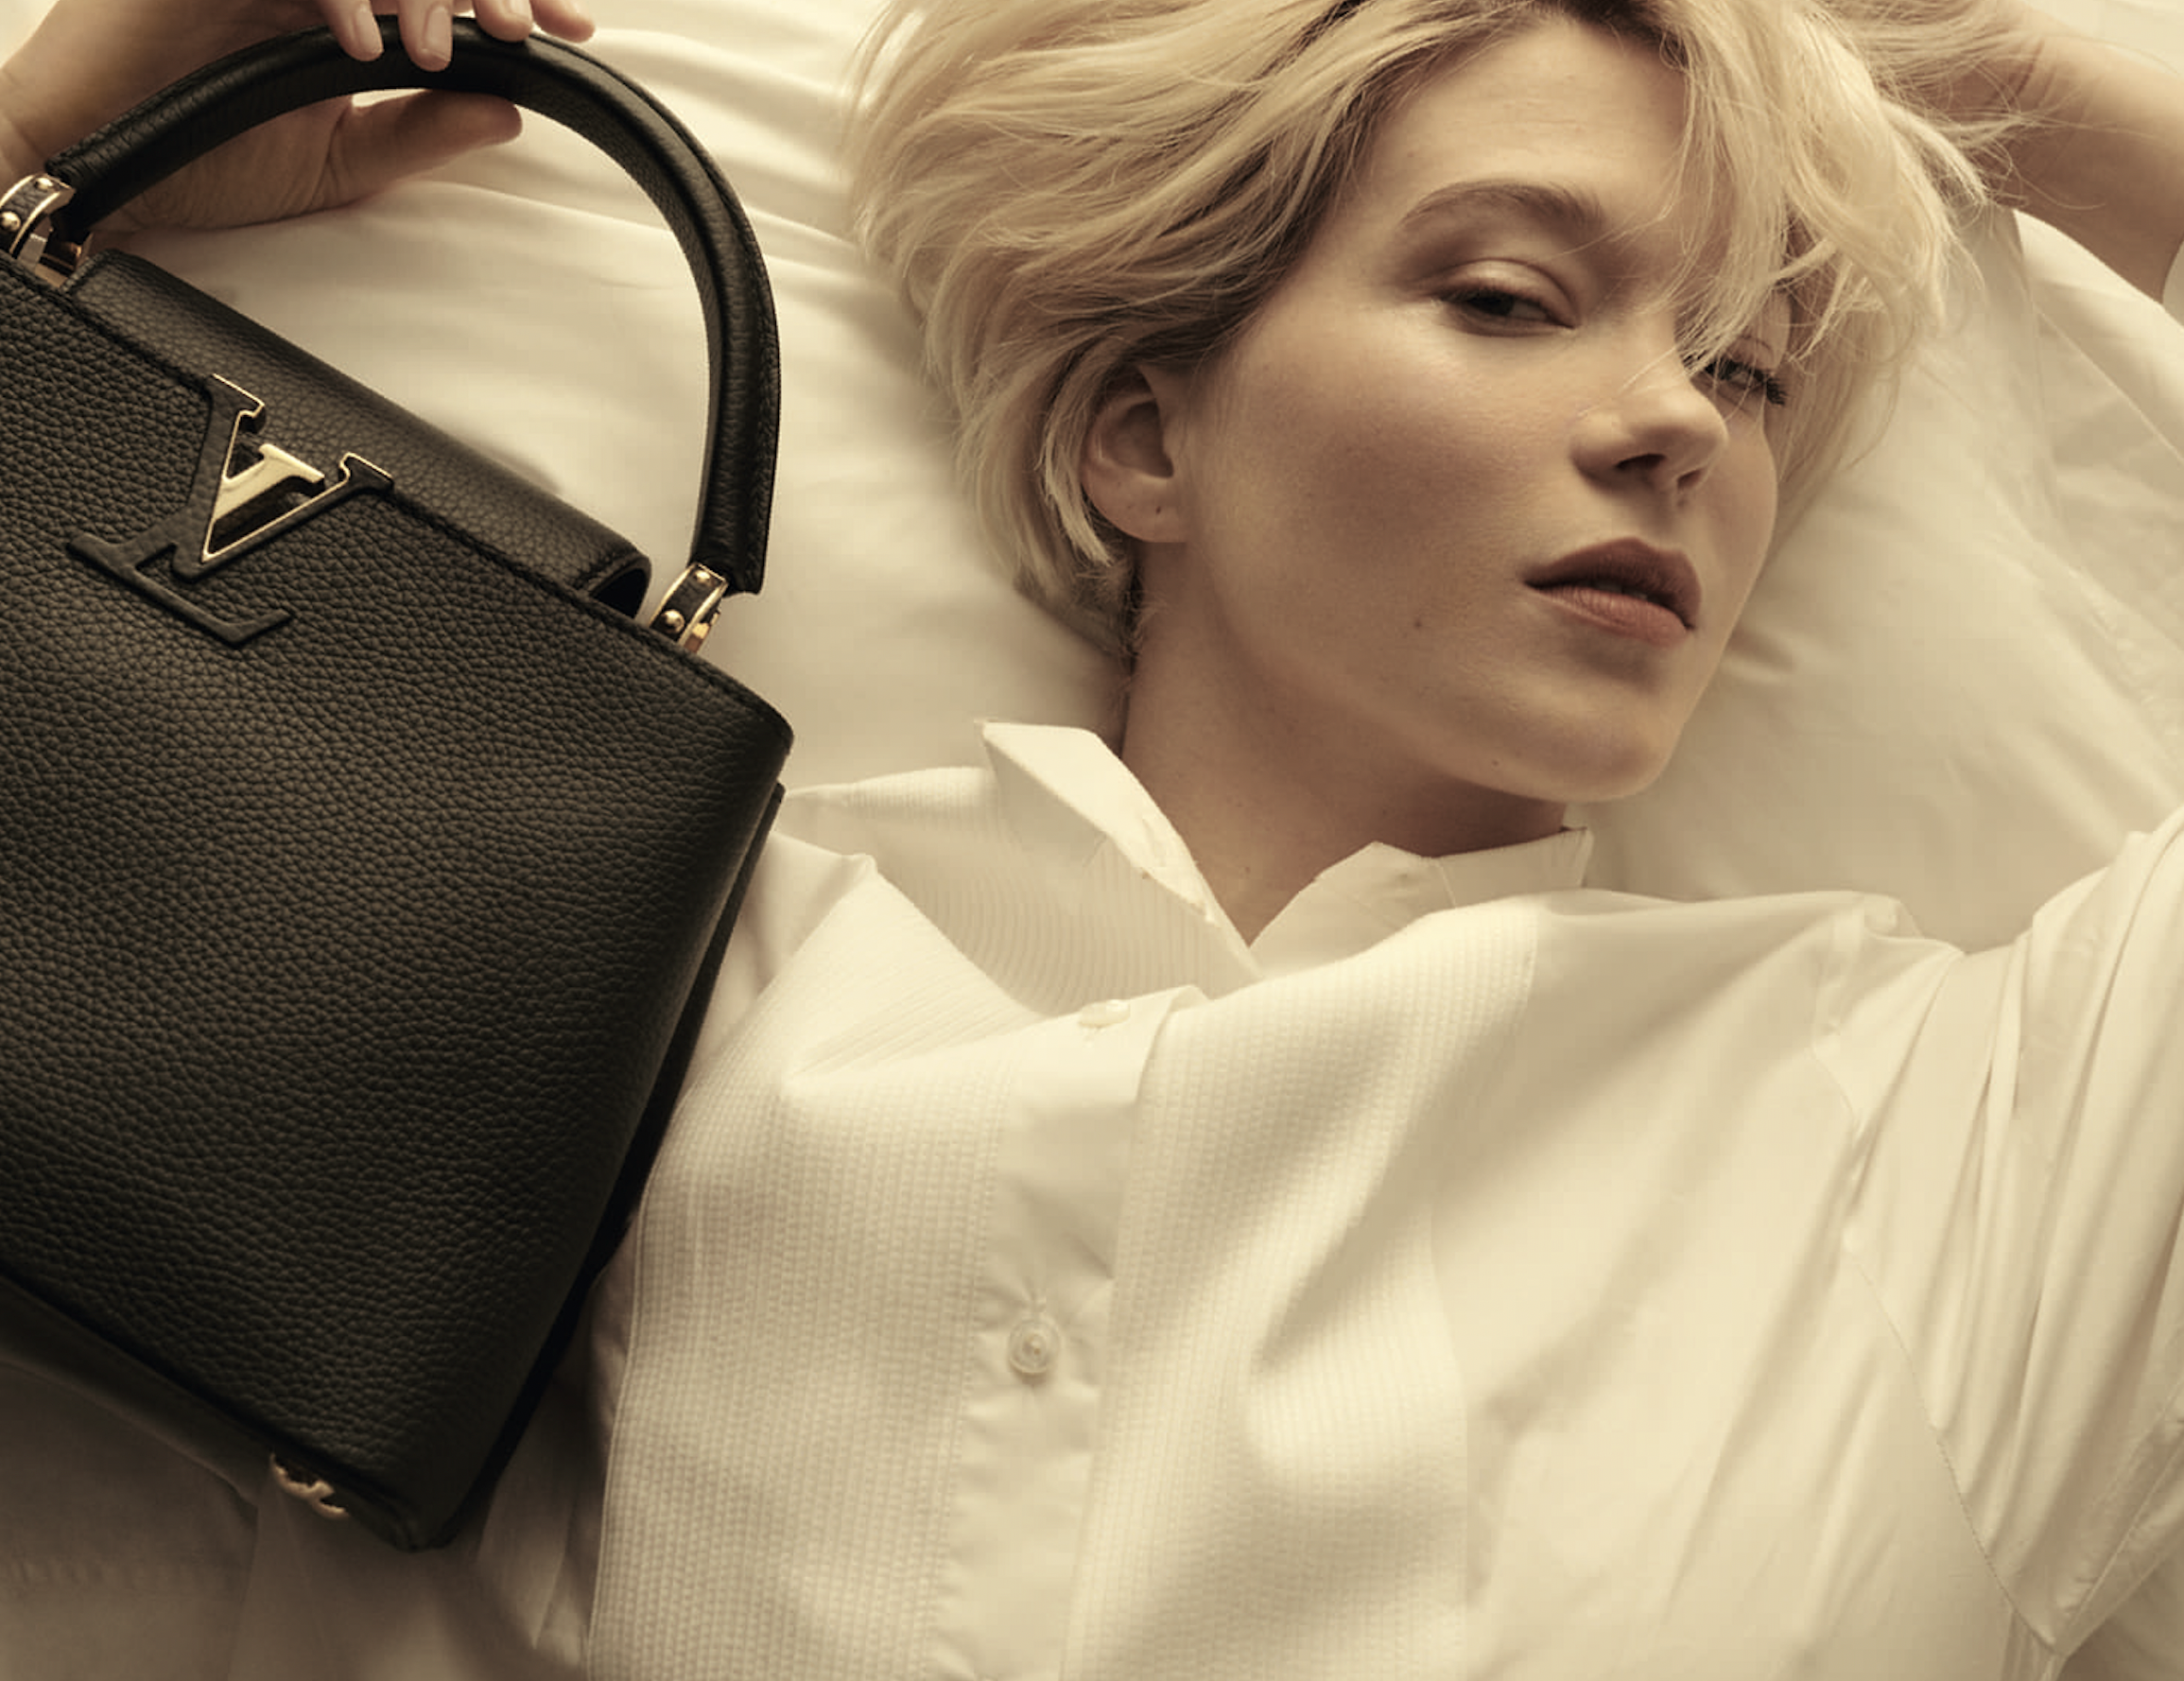 Louis Vuitton's 2021 Brand Campaign